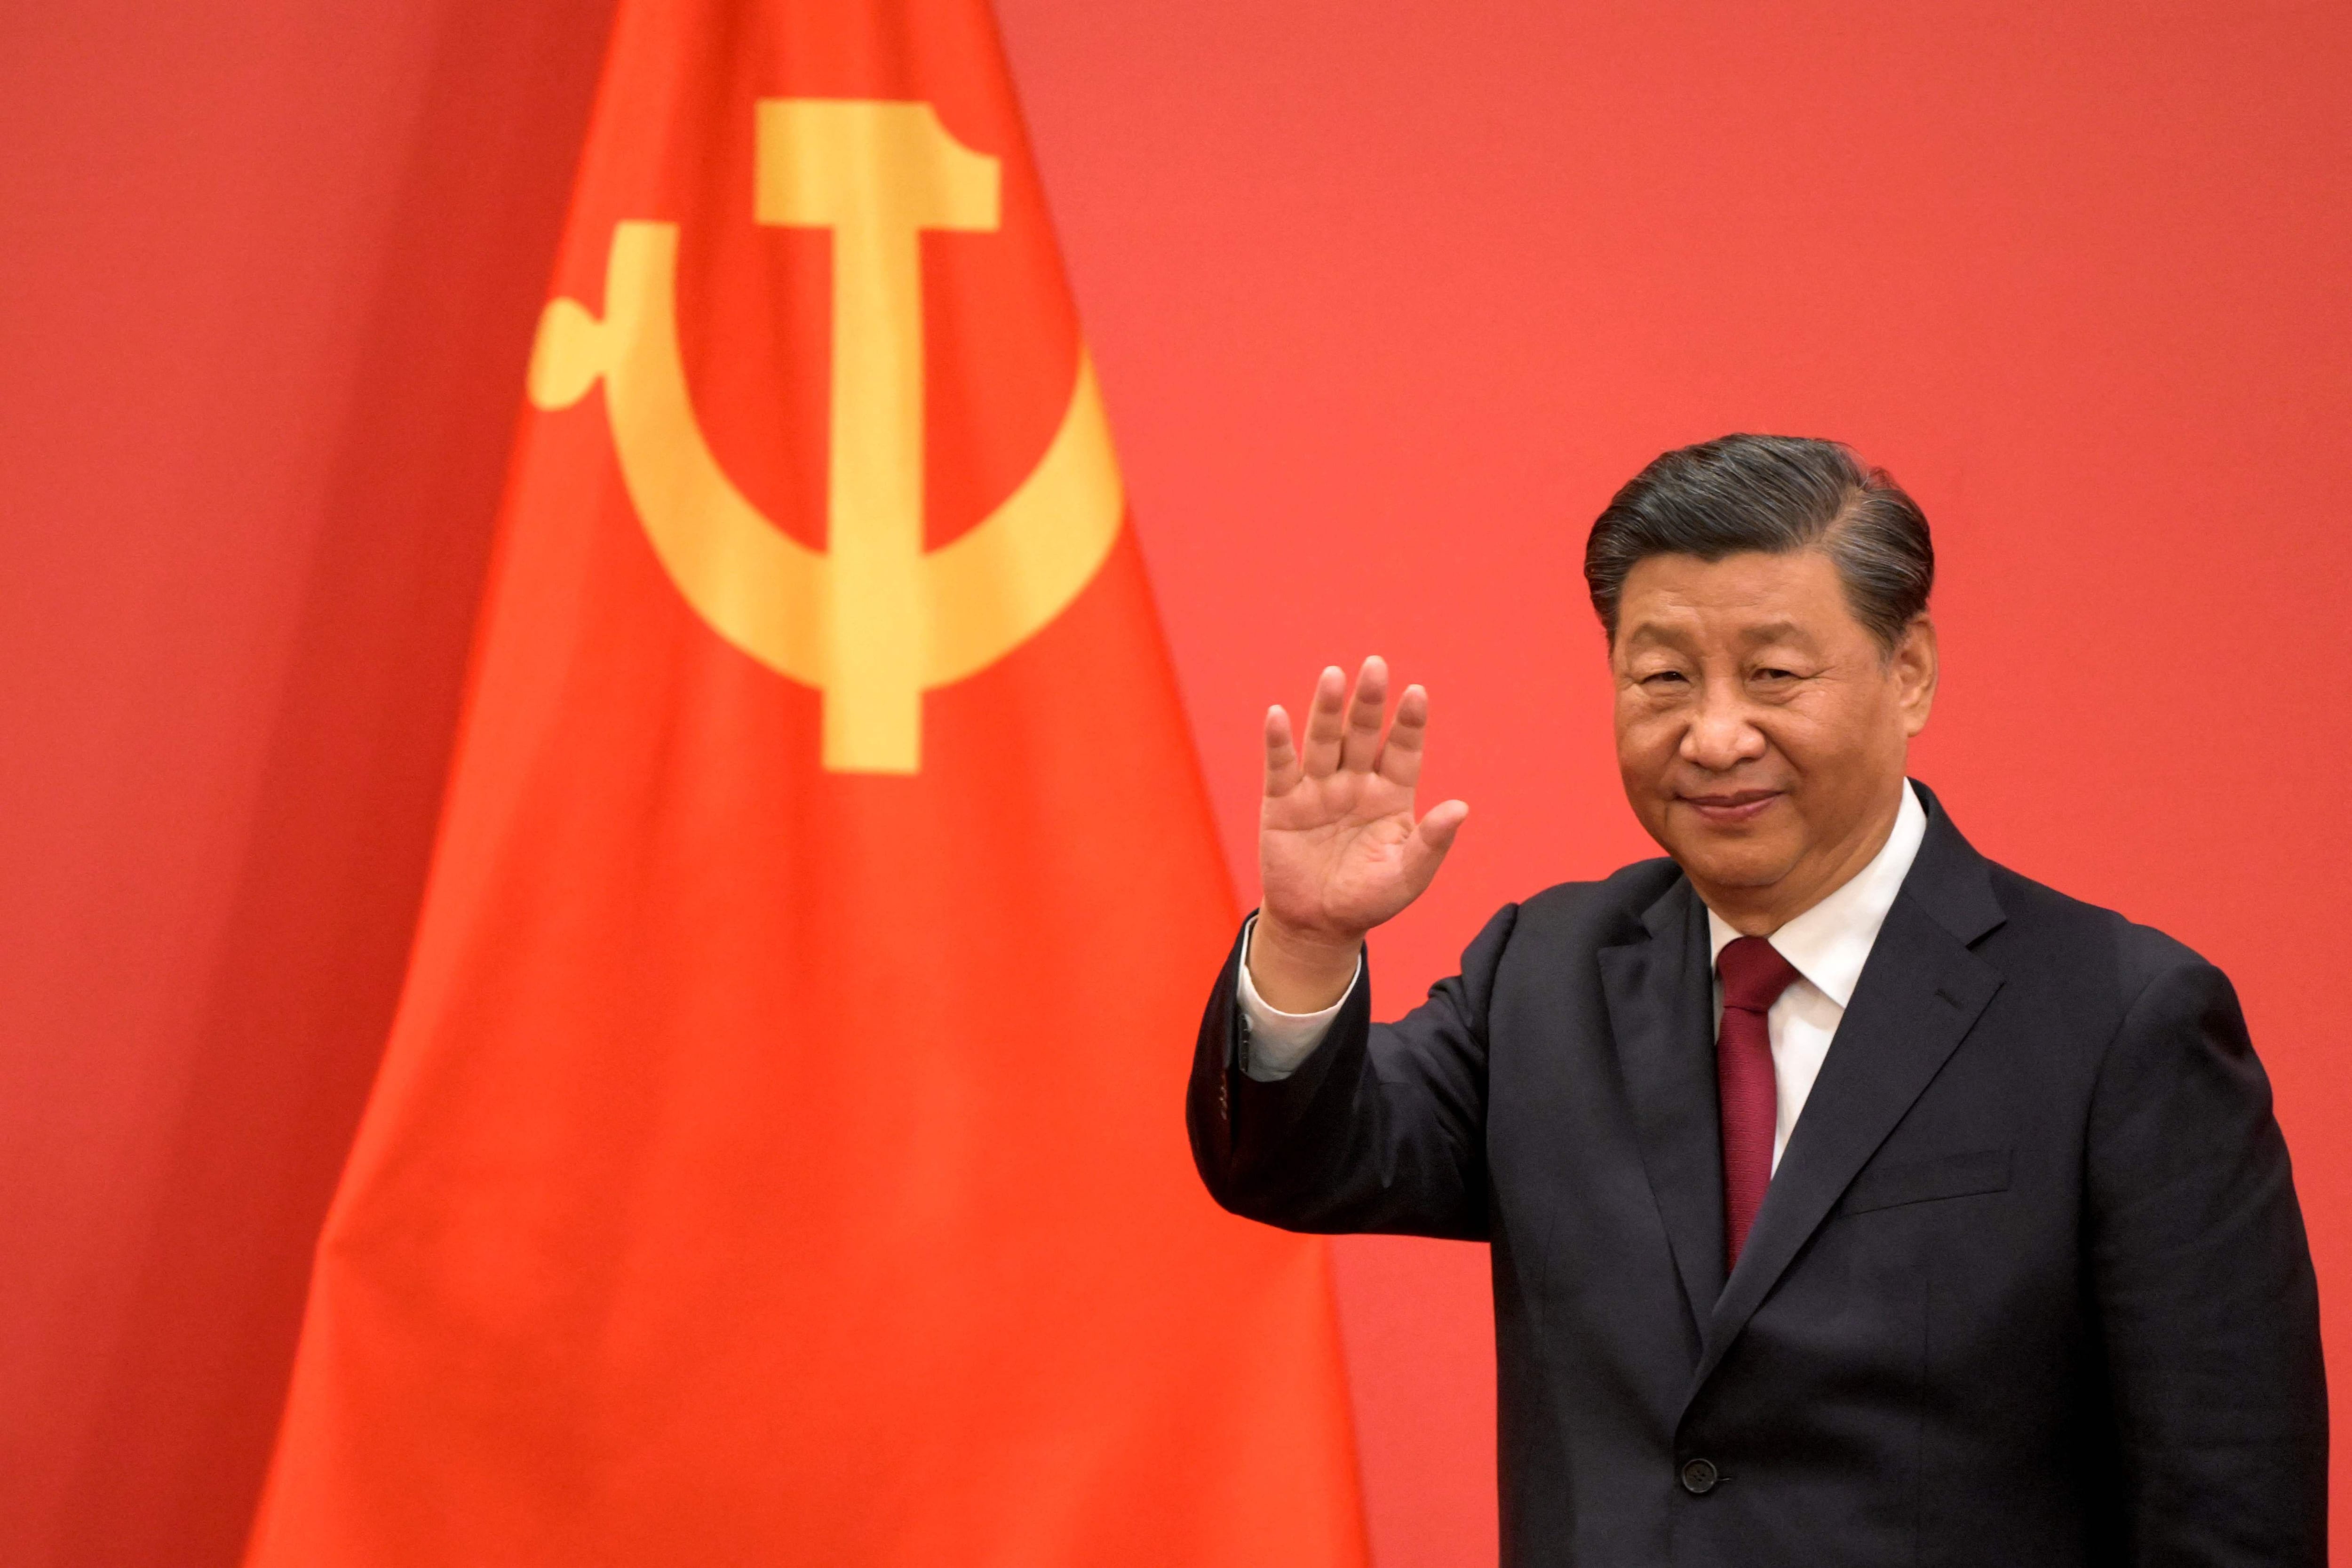 Xi Jinping dice que protestas en China son por casi tres años de pandemia 